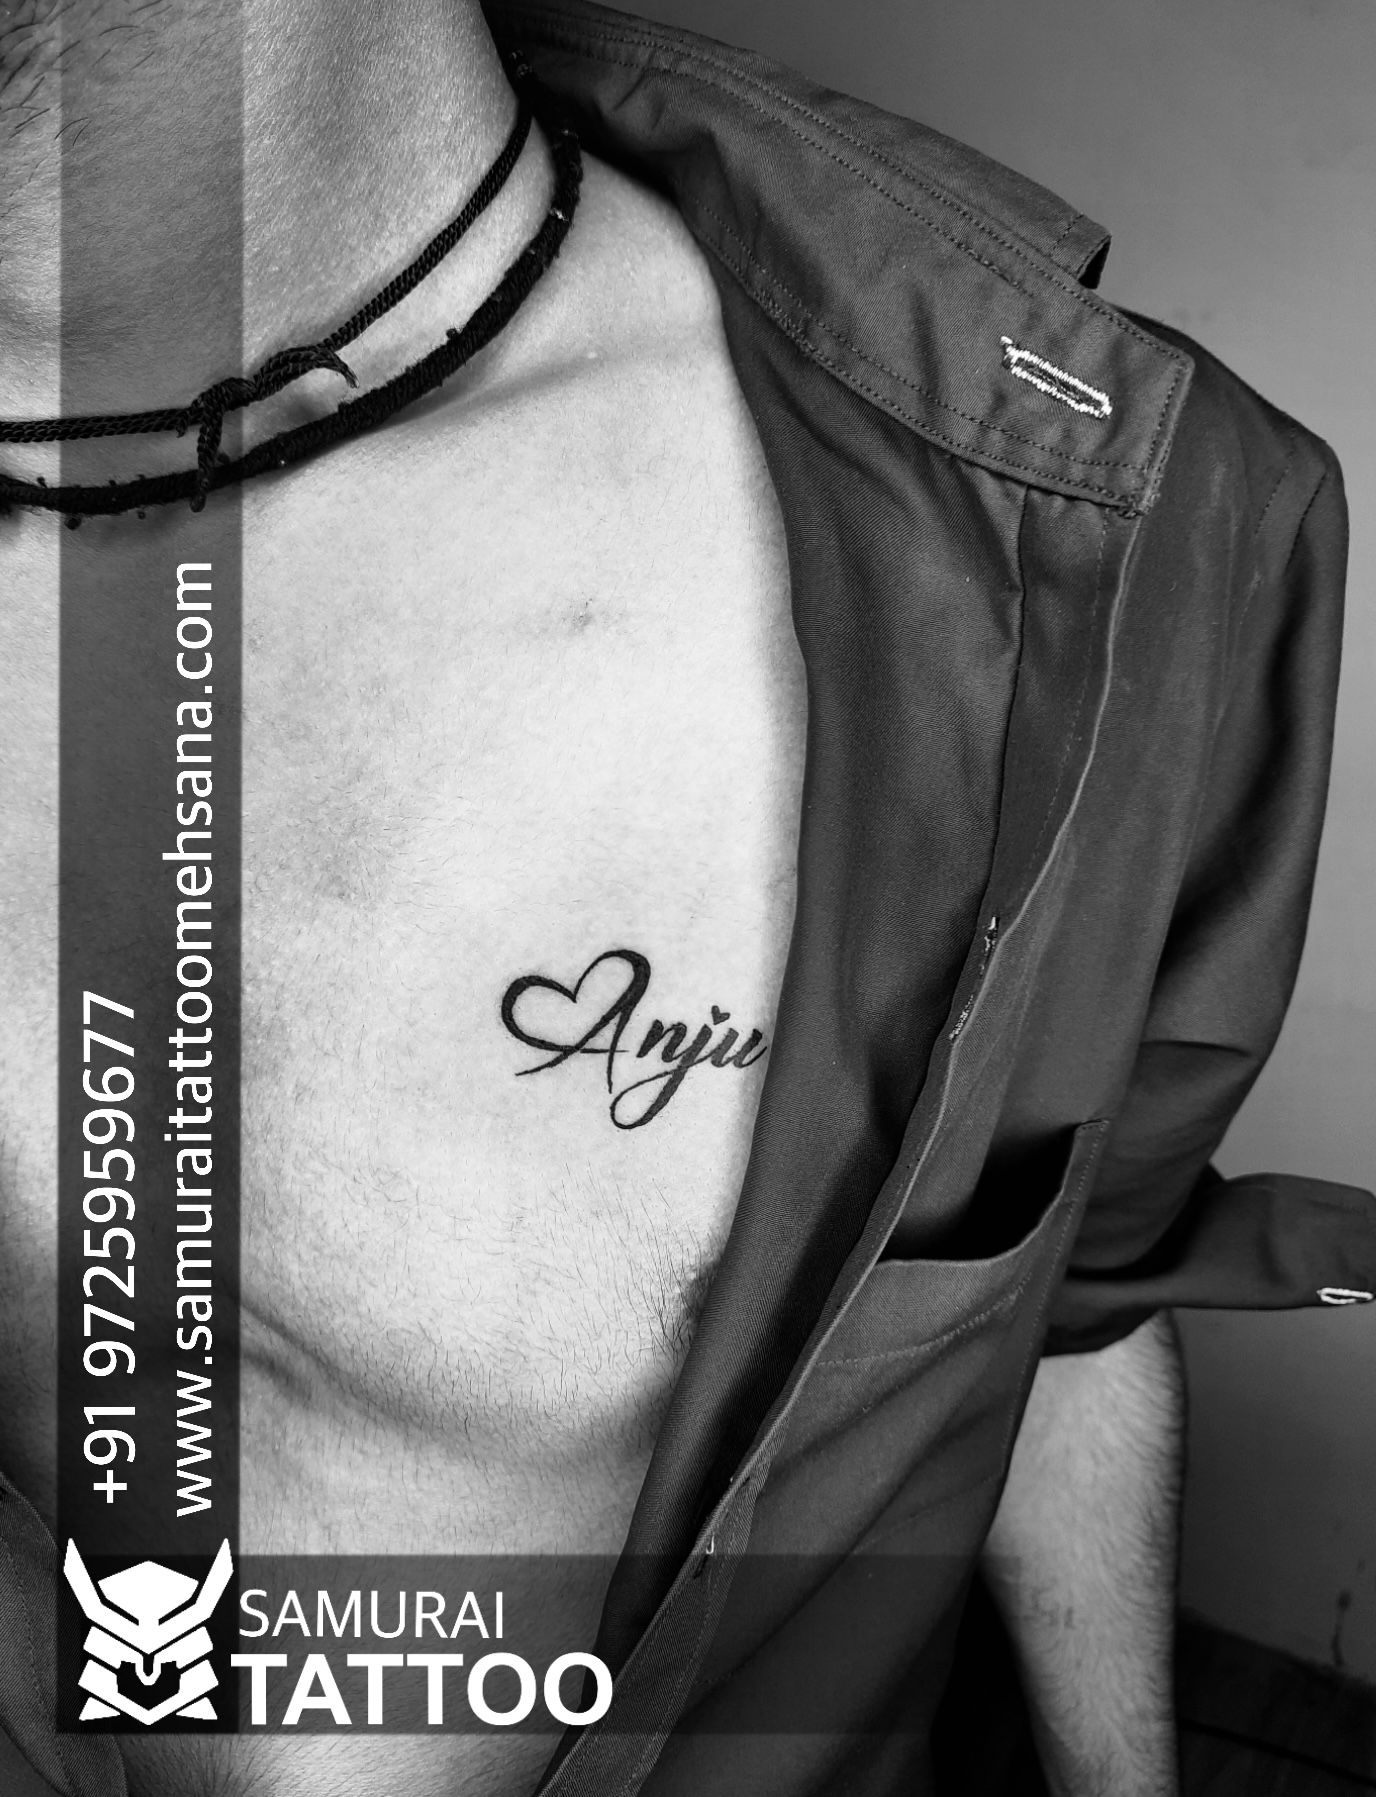 Birgunj Tattoo Art - Tattoo and Piercing